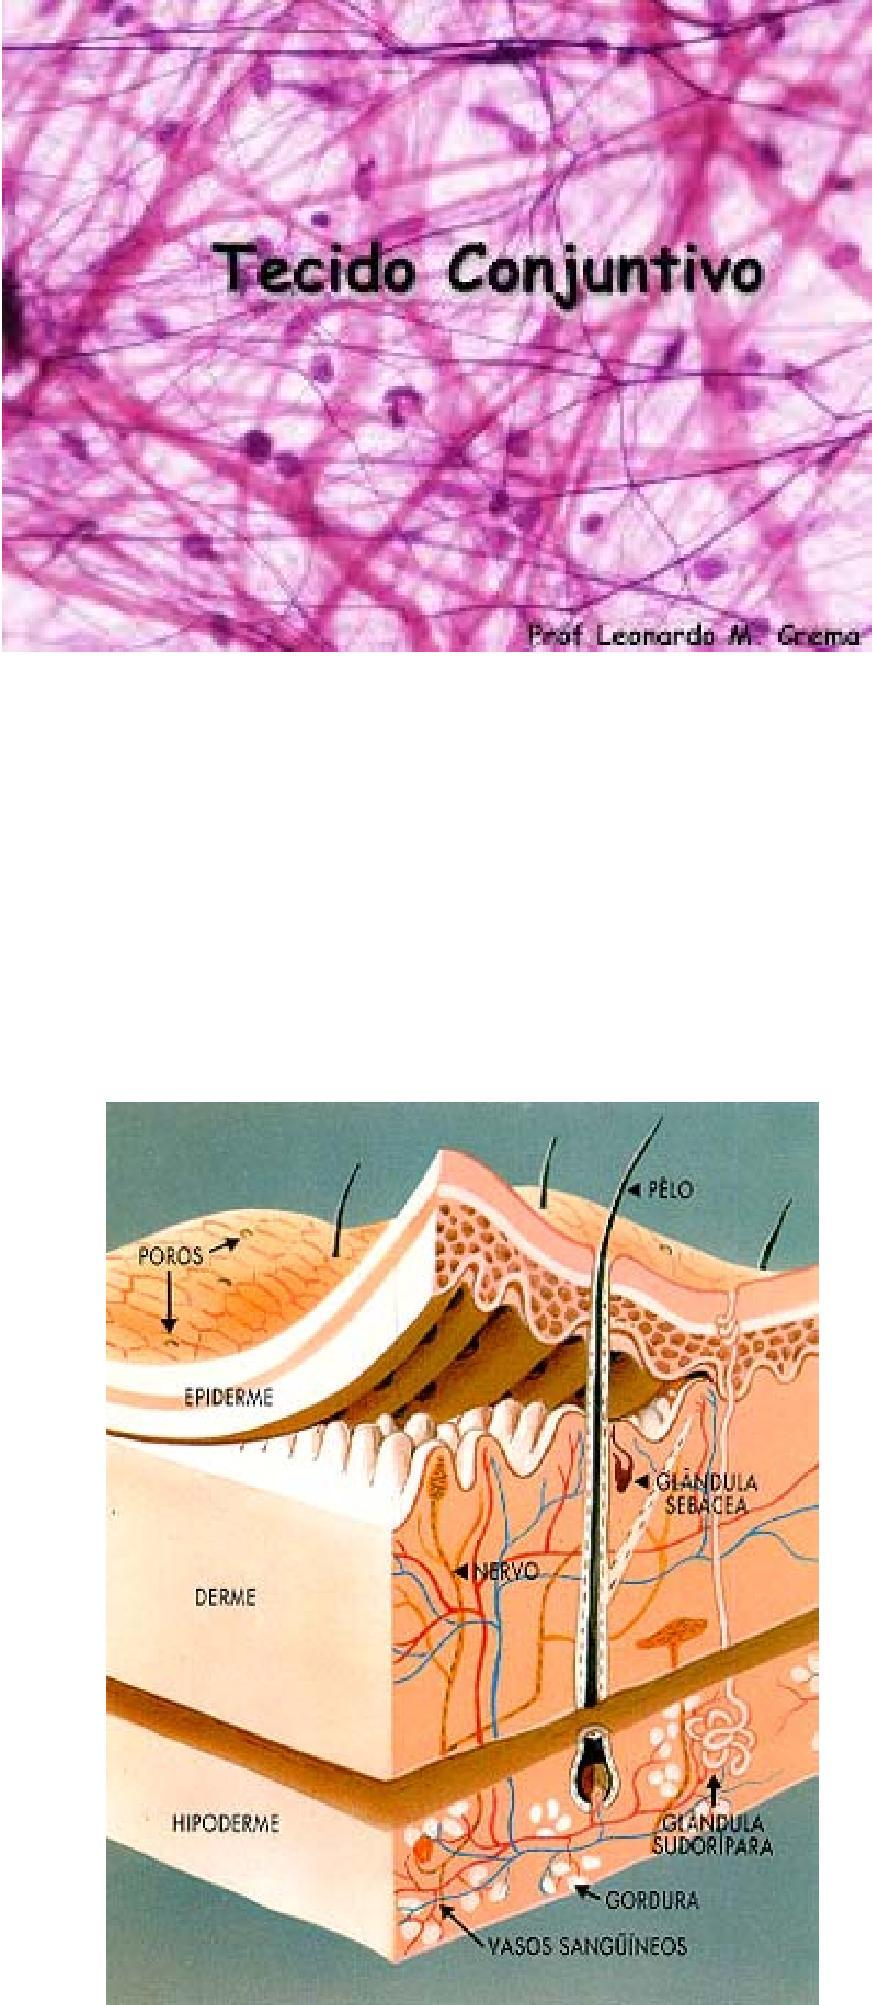 5 Fonte: http://www.blzinterior.com.br/2012/08/15/entendendo-a-nossa-pele/ Figura 5: Hipoderme Os anexos da pele são estruturas que se originam por invaginação da epiderme na derme.